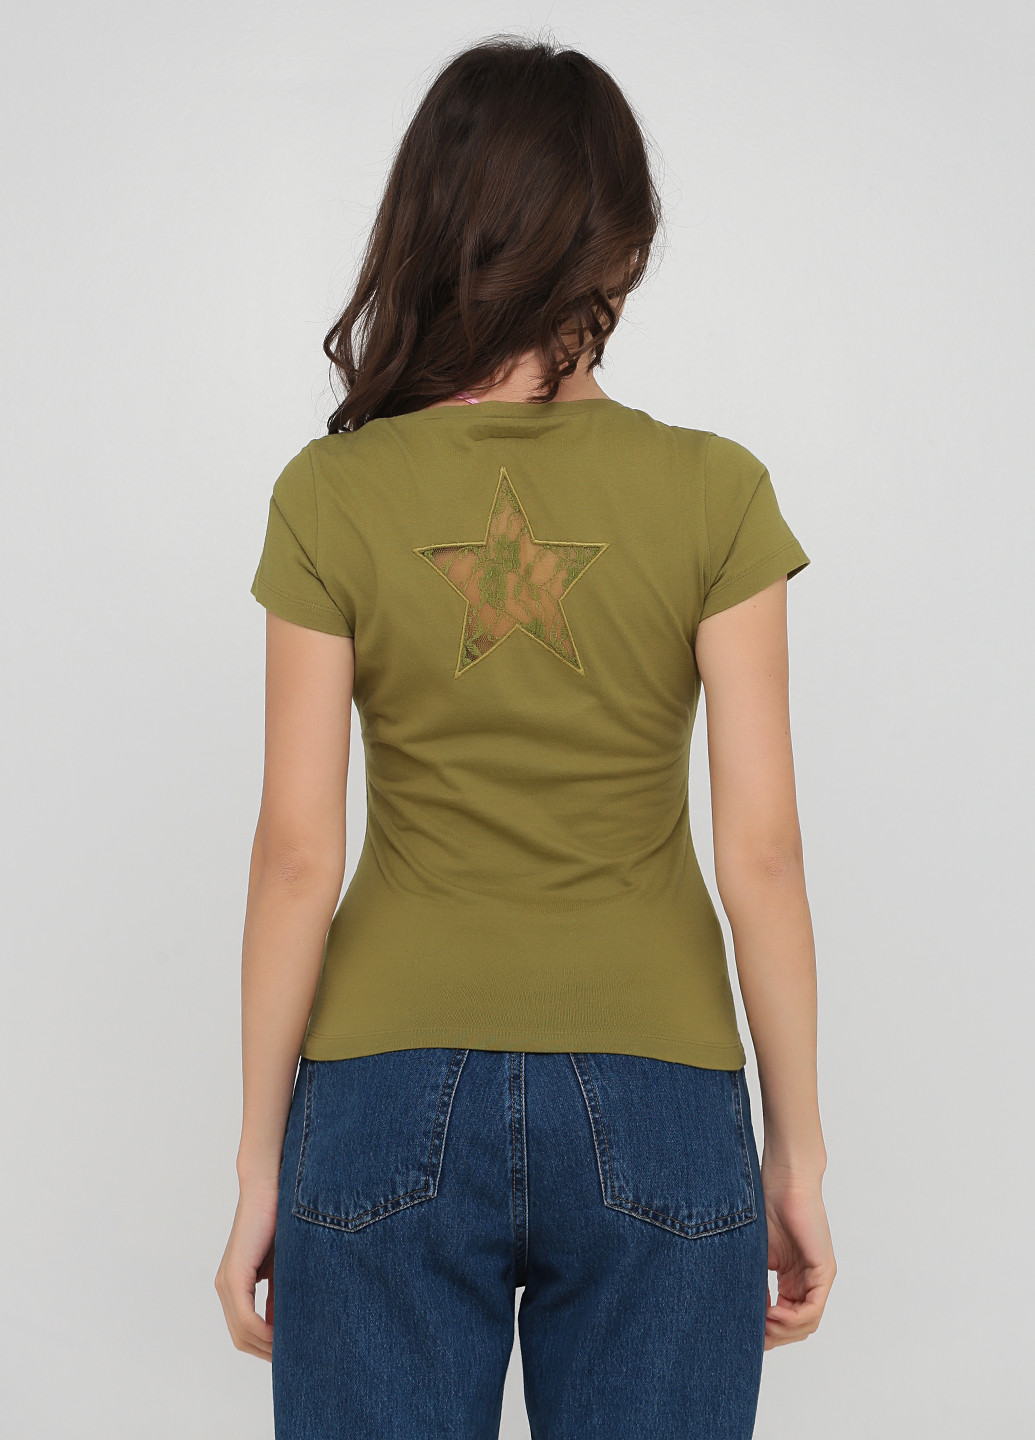 Хаки (оливковая) летняя футболка Killah